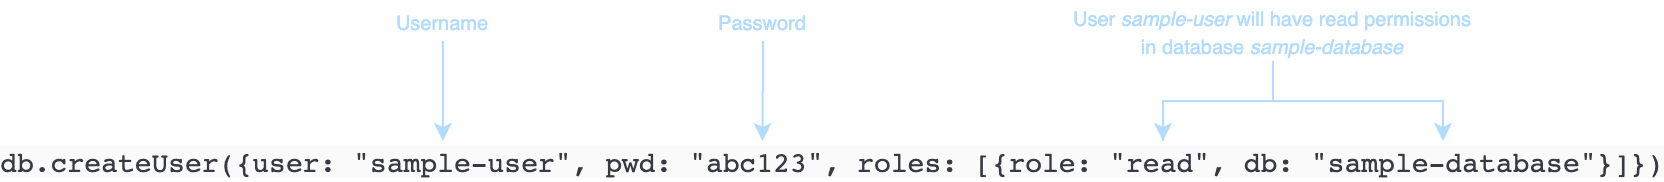 ユーザー名、パスワード、およびアクセス許可を示す createUser コマンドのコード例。